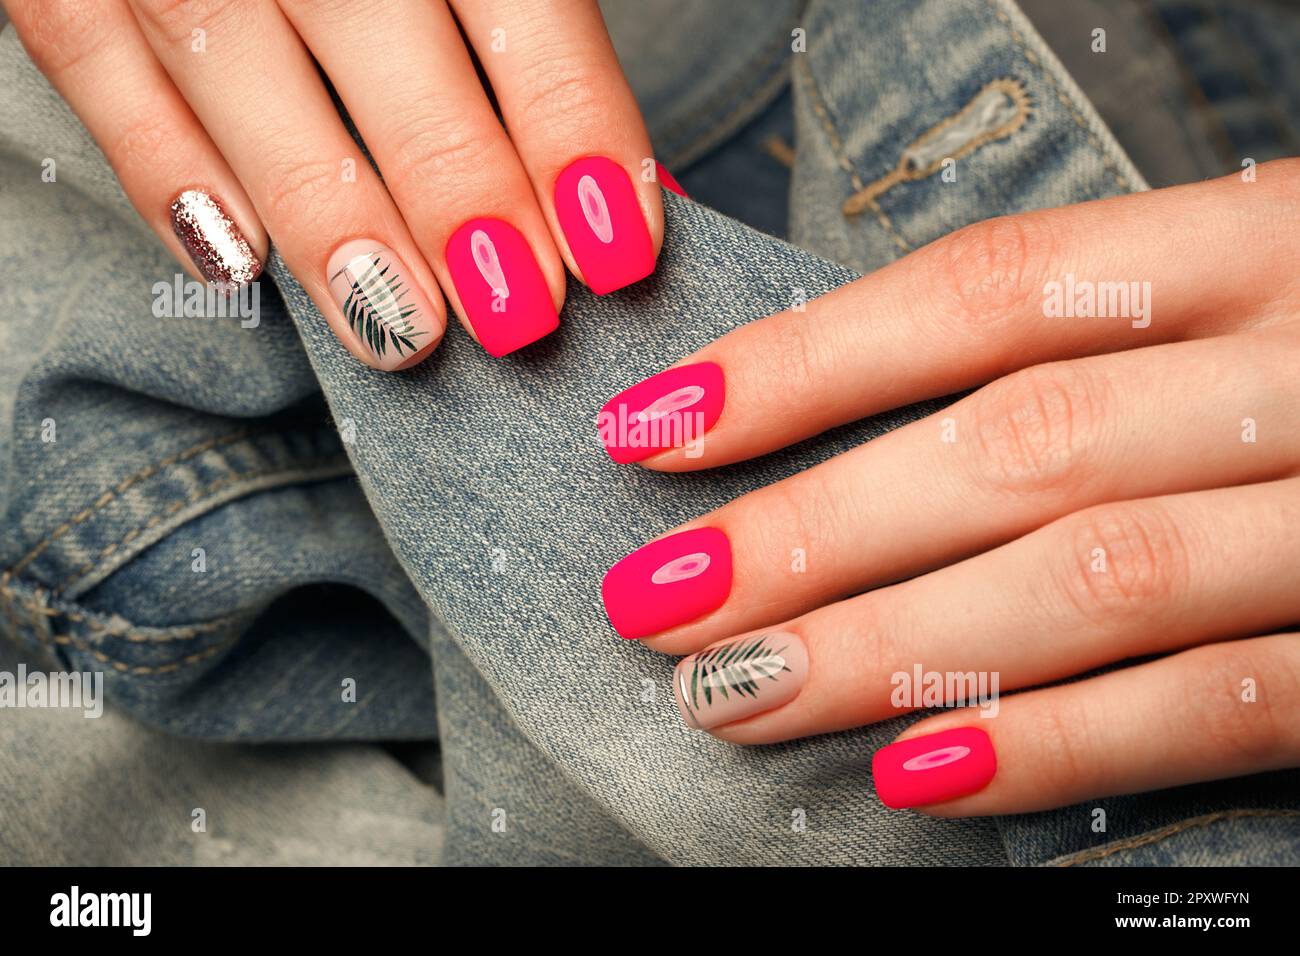 Neutrally Beautiful Nails | Nail colors, Beauty hacks nails, Nail polish